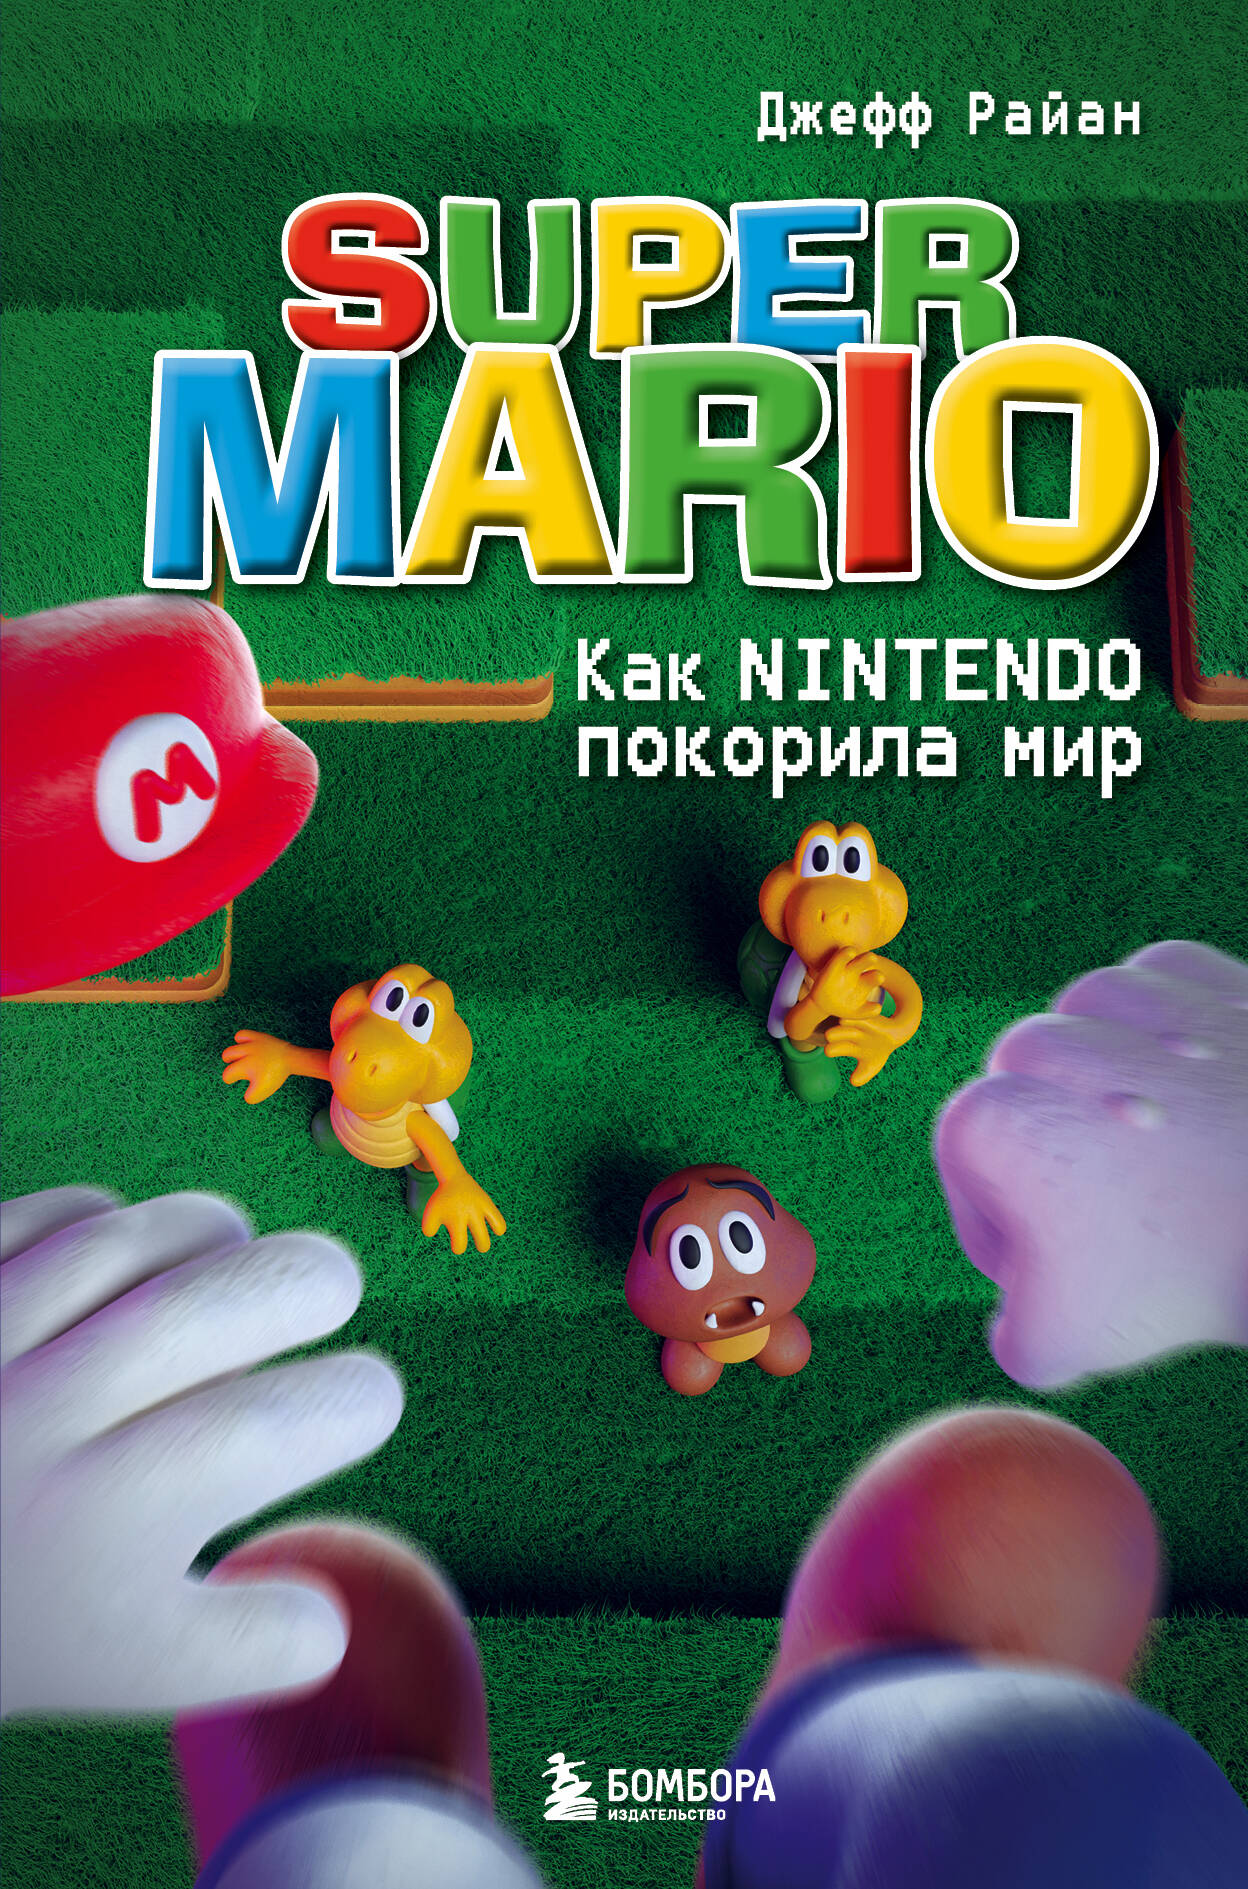 Super Mario.  Nintendo  